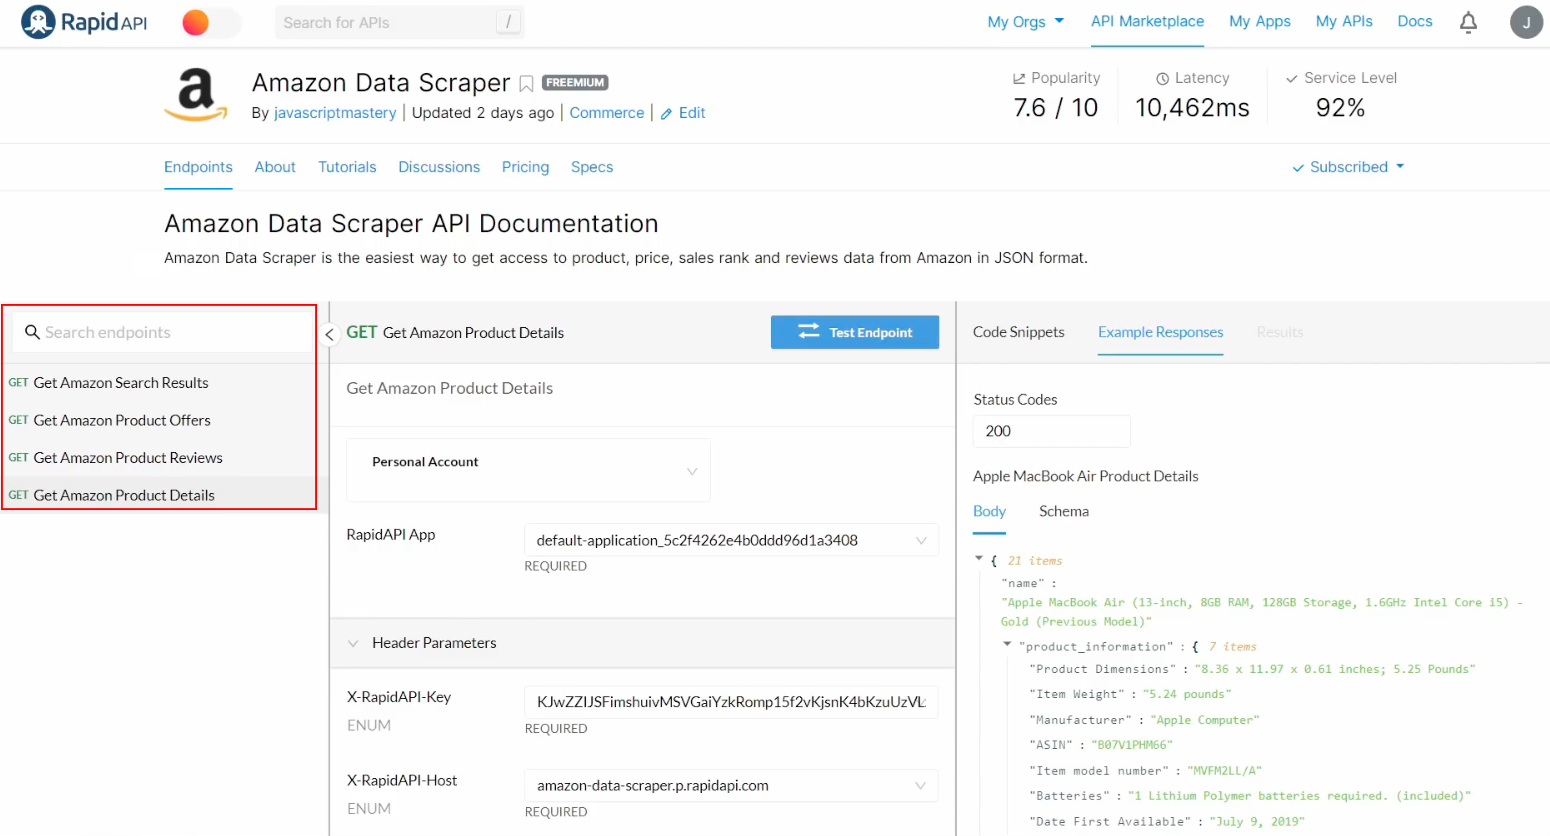 Amazon Data Scraper API Documentation